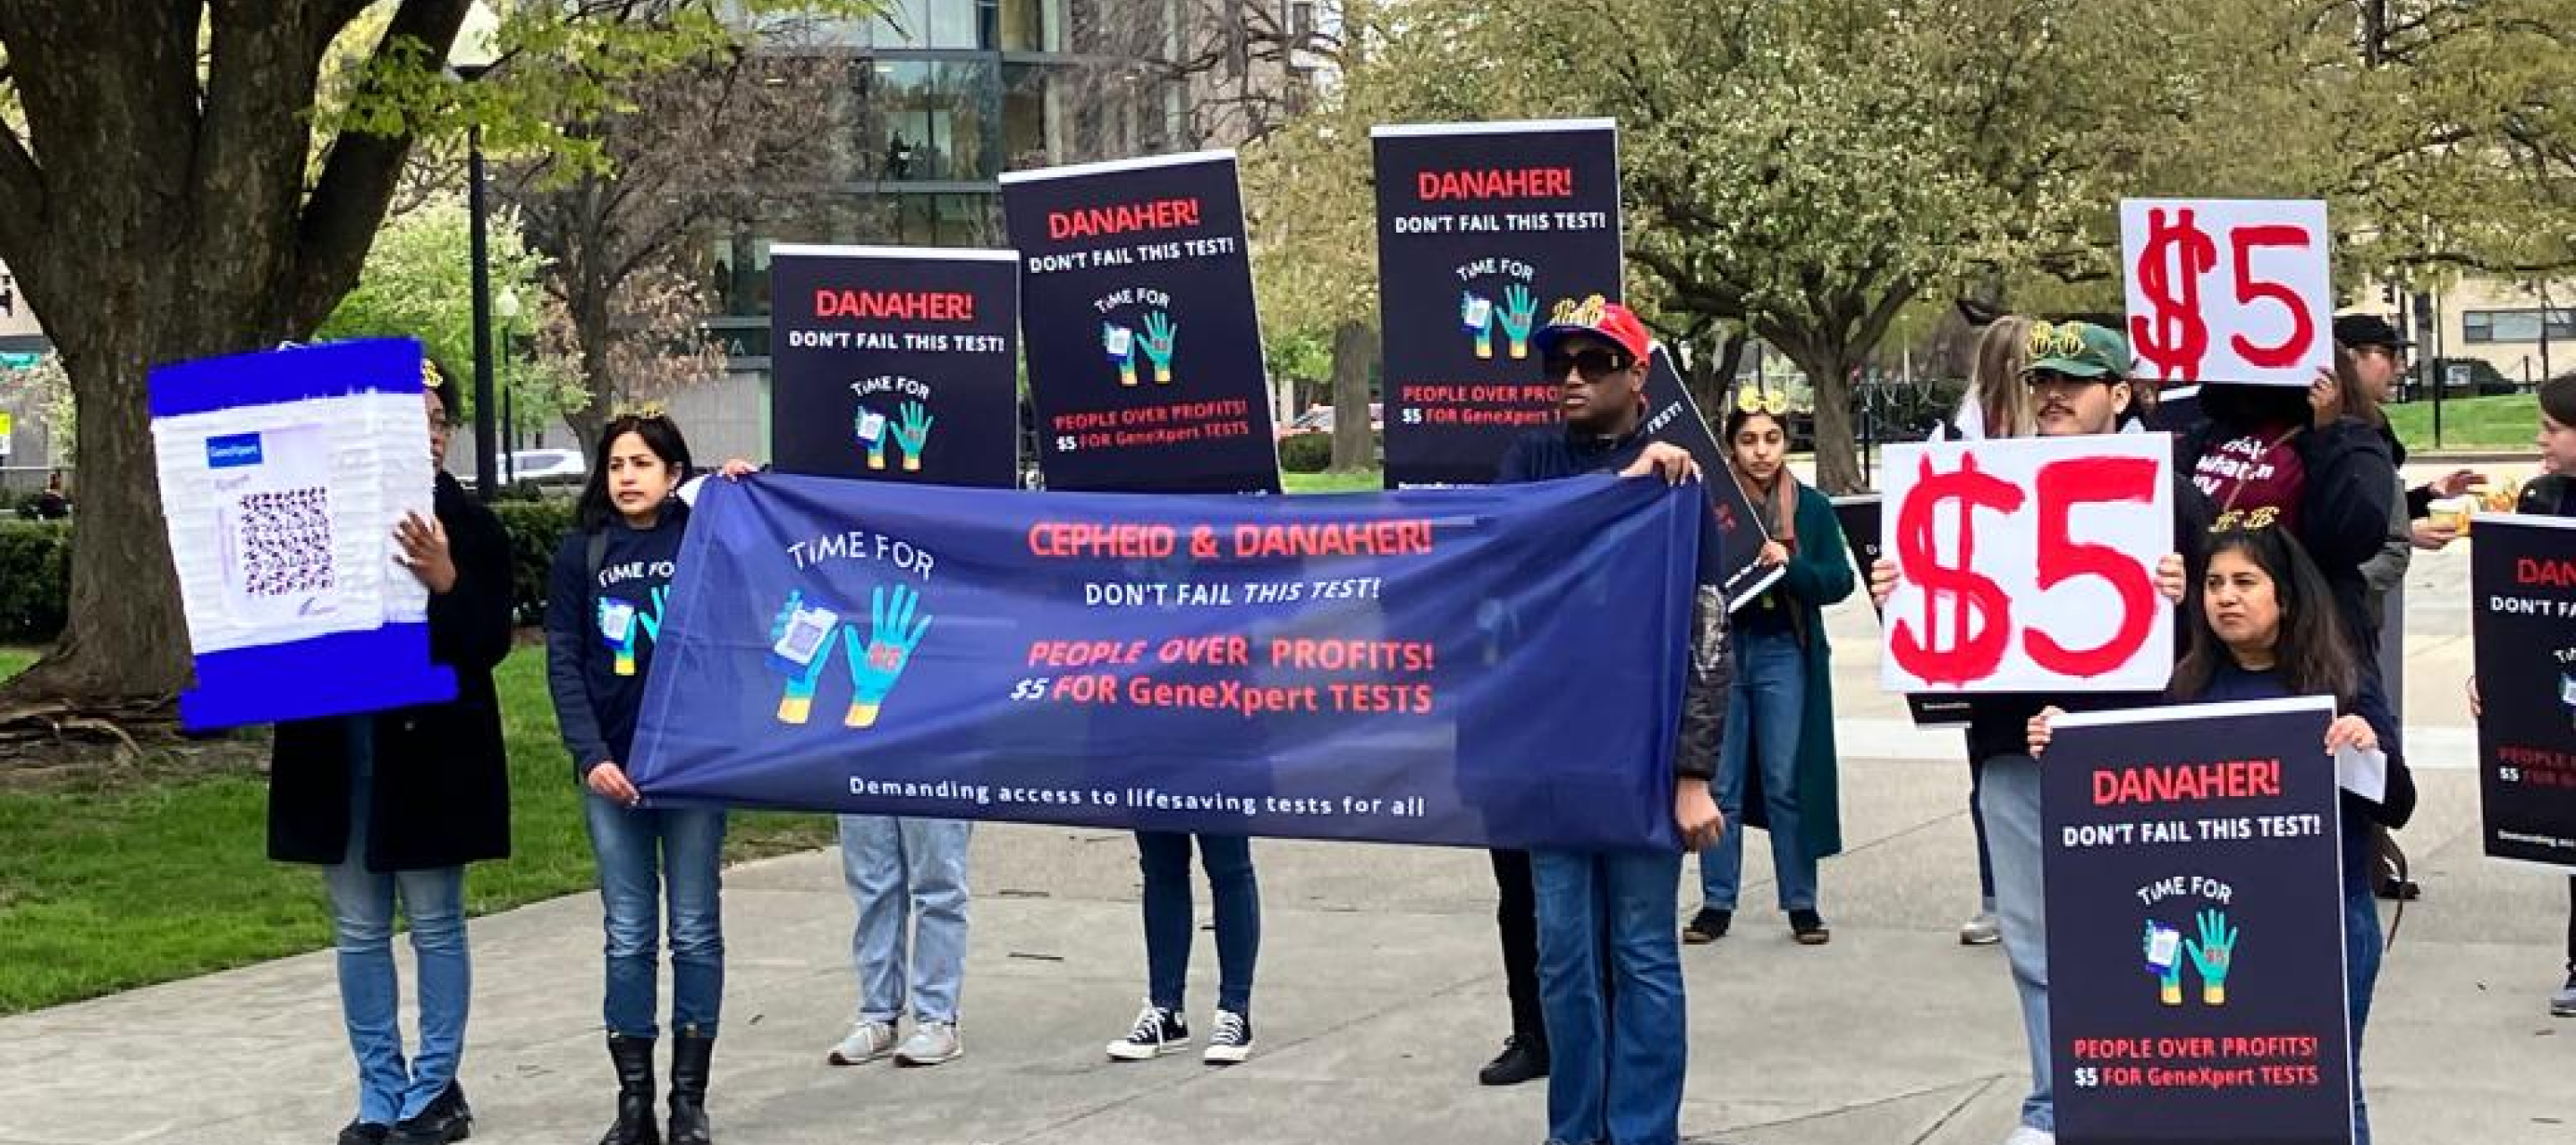 Gruppe Menschen hält Schilder mit Forderung an Danaher Preis zu senken